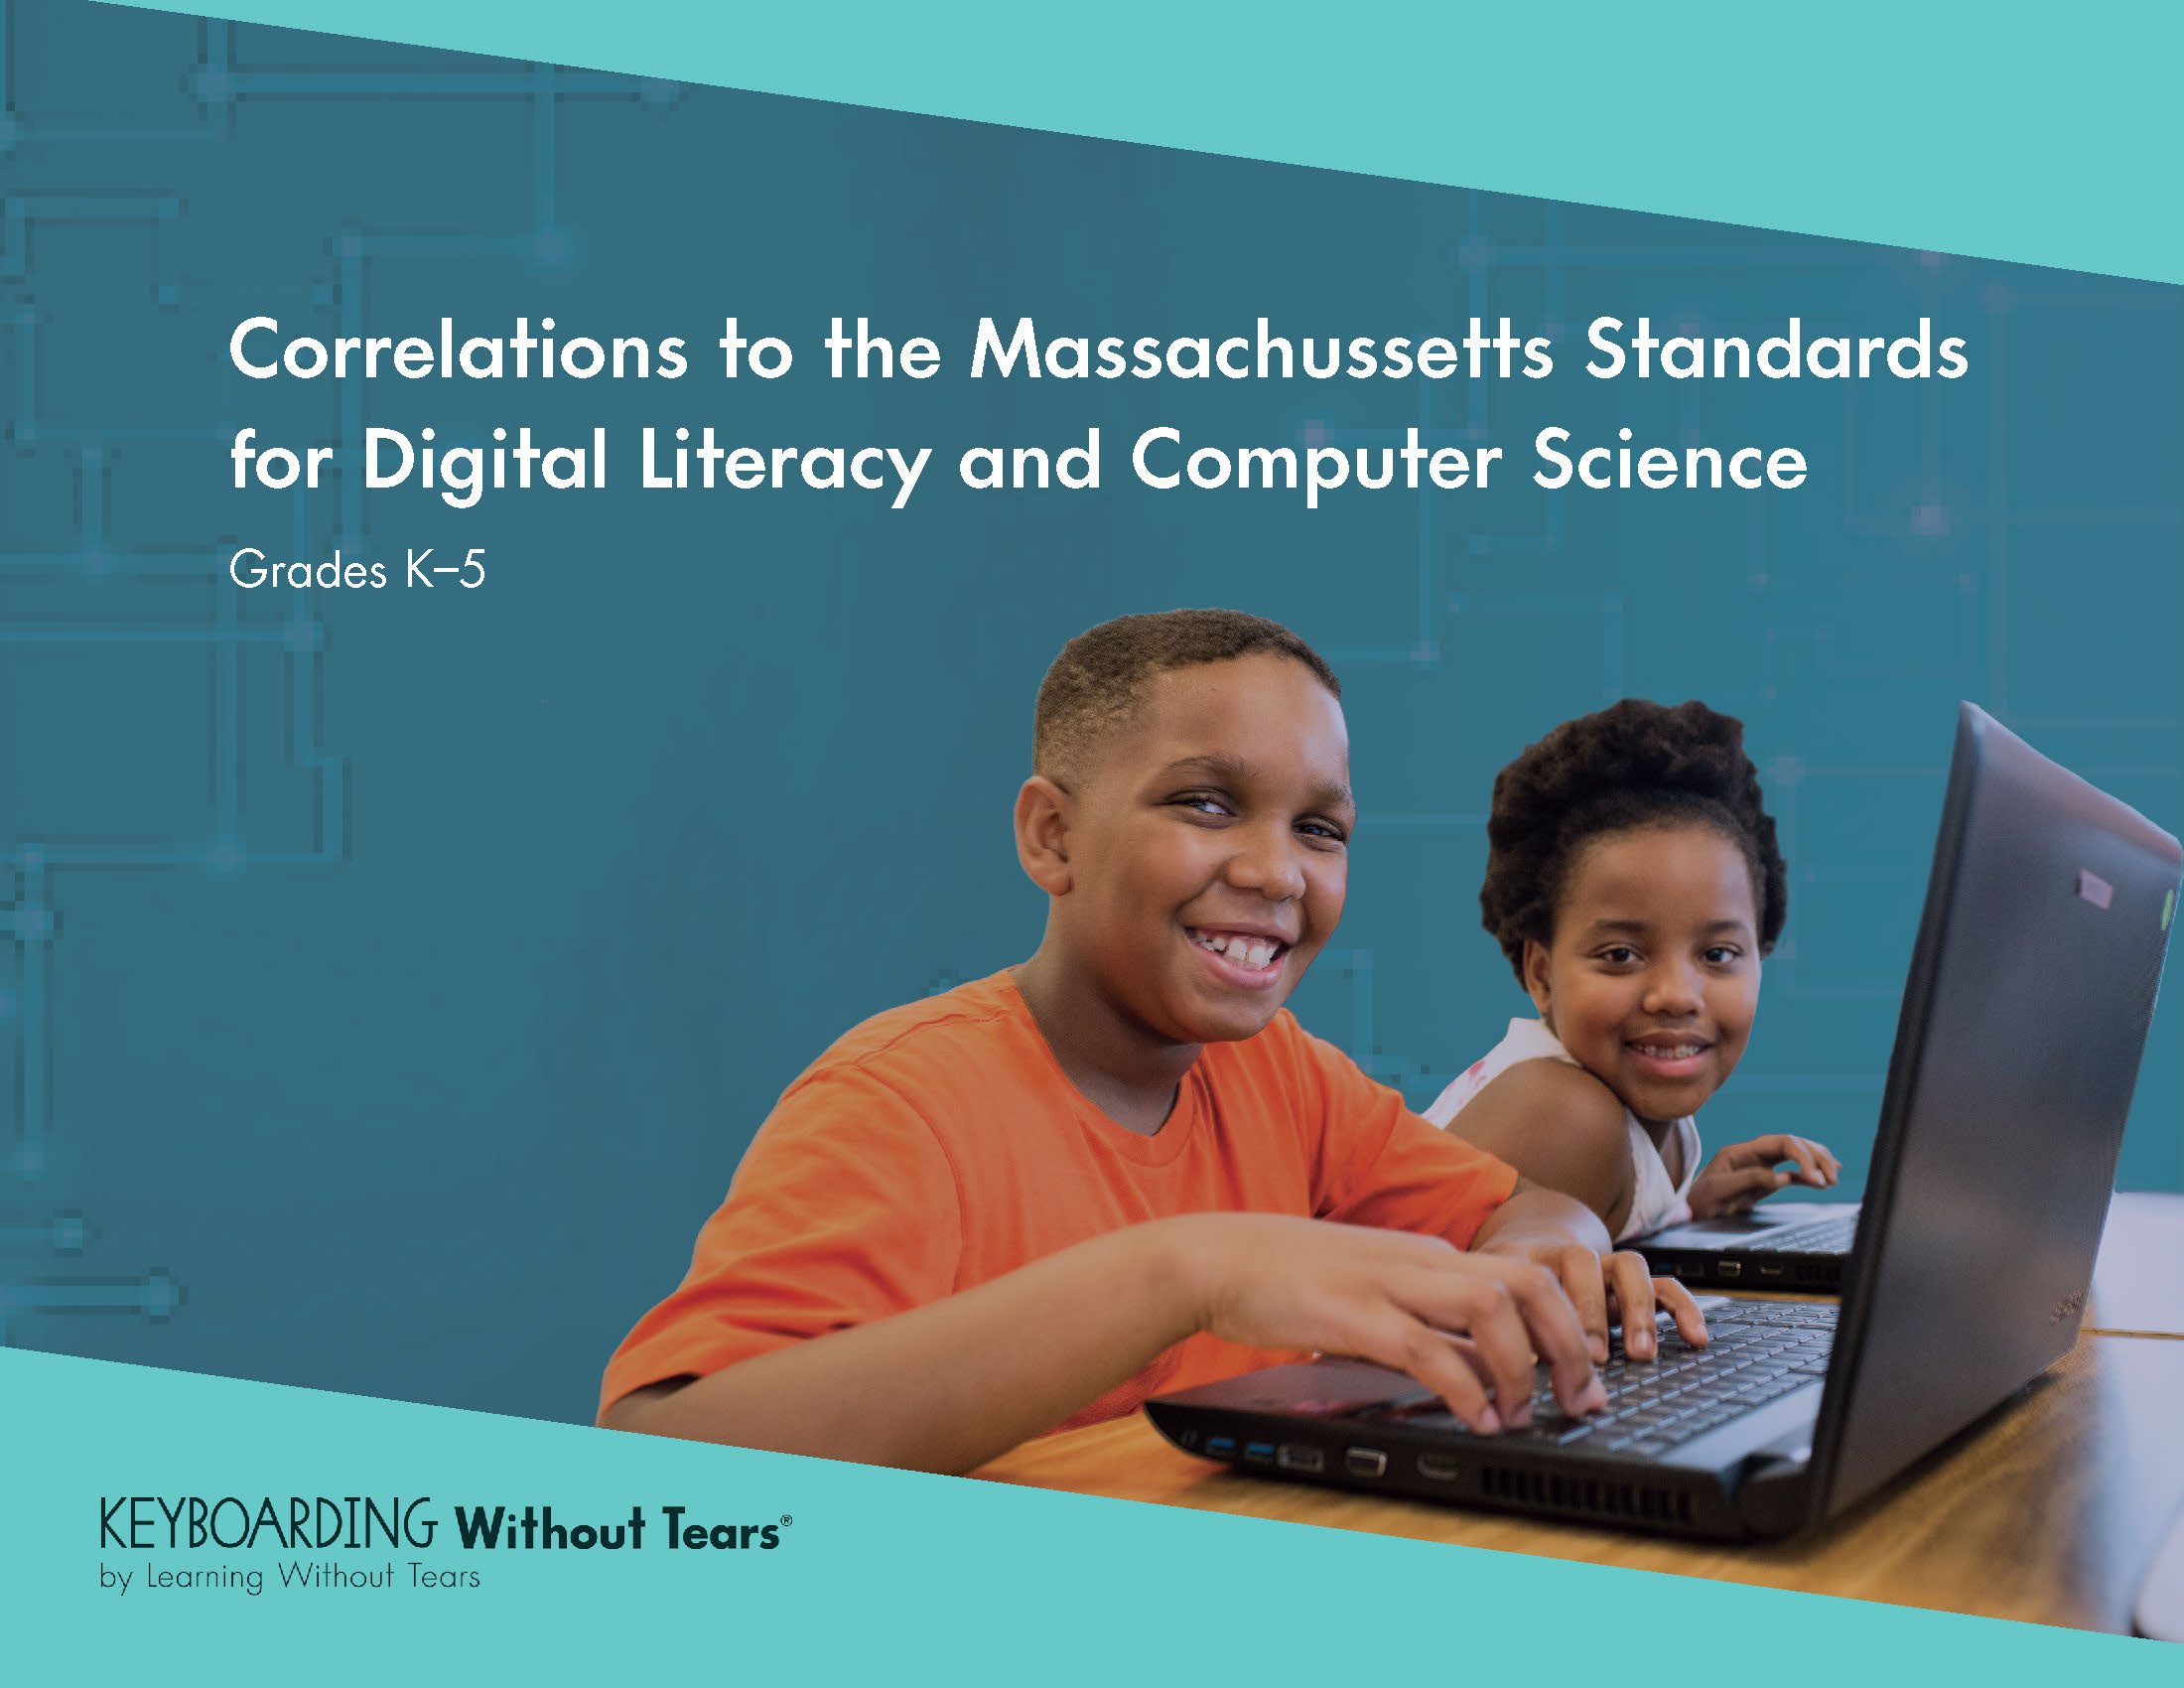 Massachusetts Standards for Digital Literacy